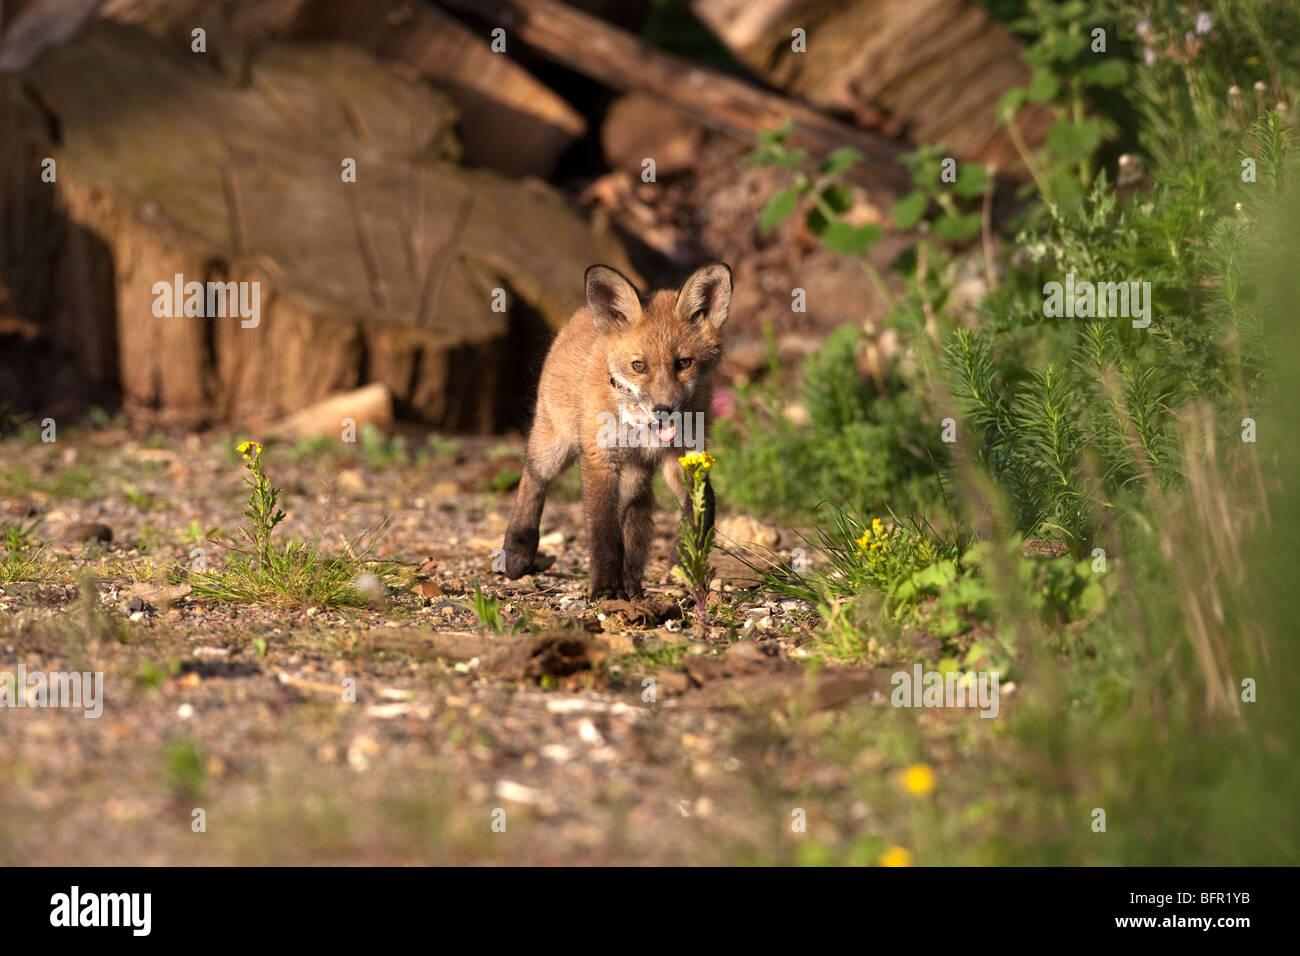 Vulpes vulpes - red fox cub in urban garden Stock Photo